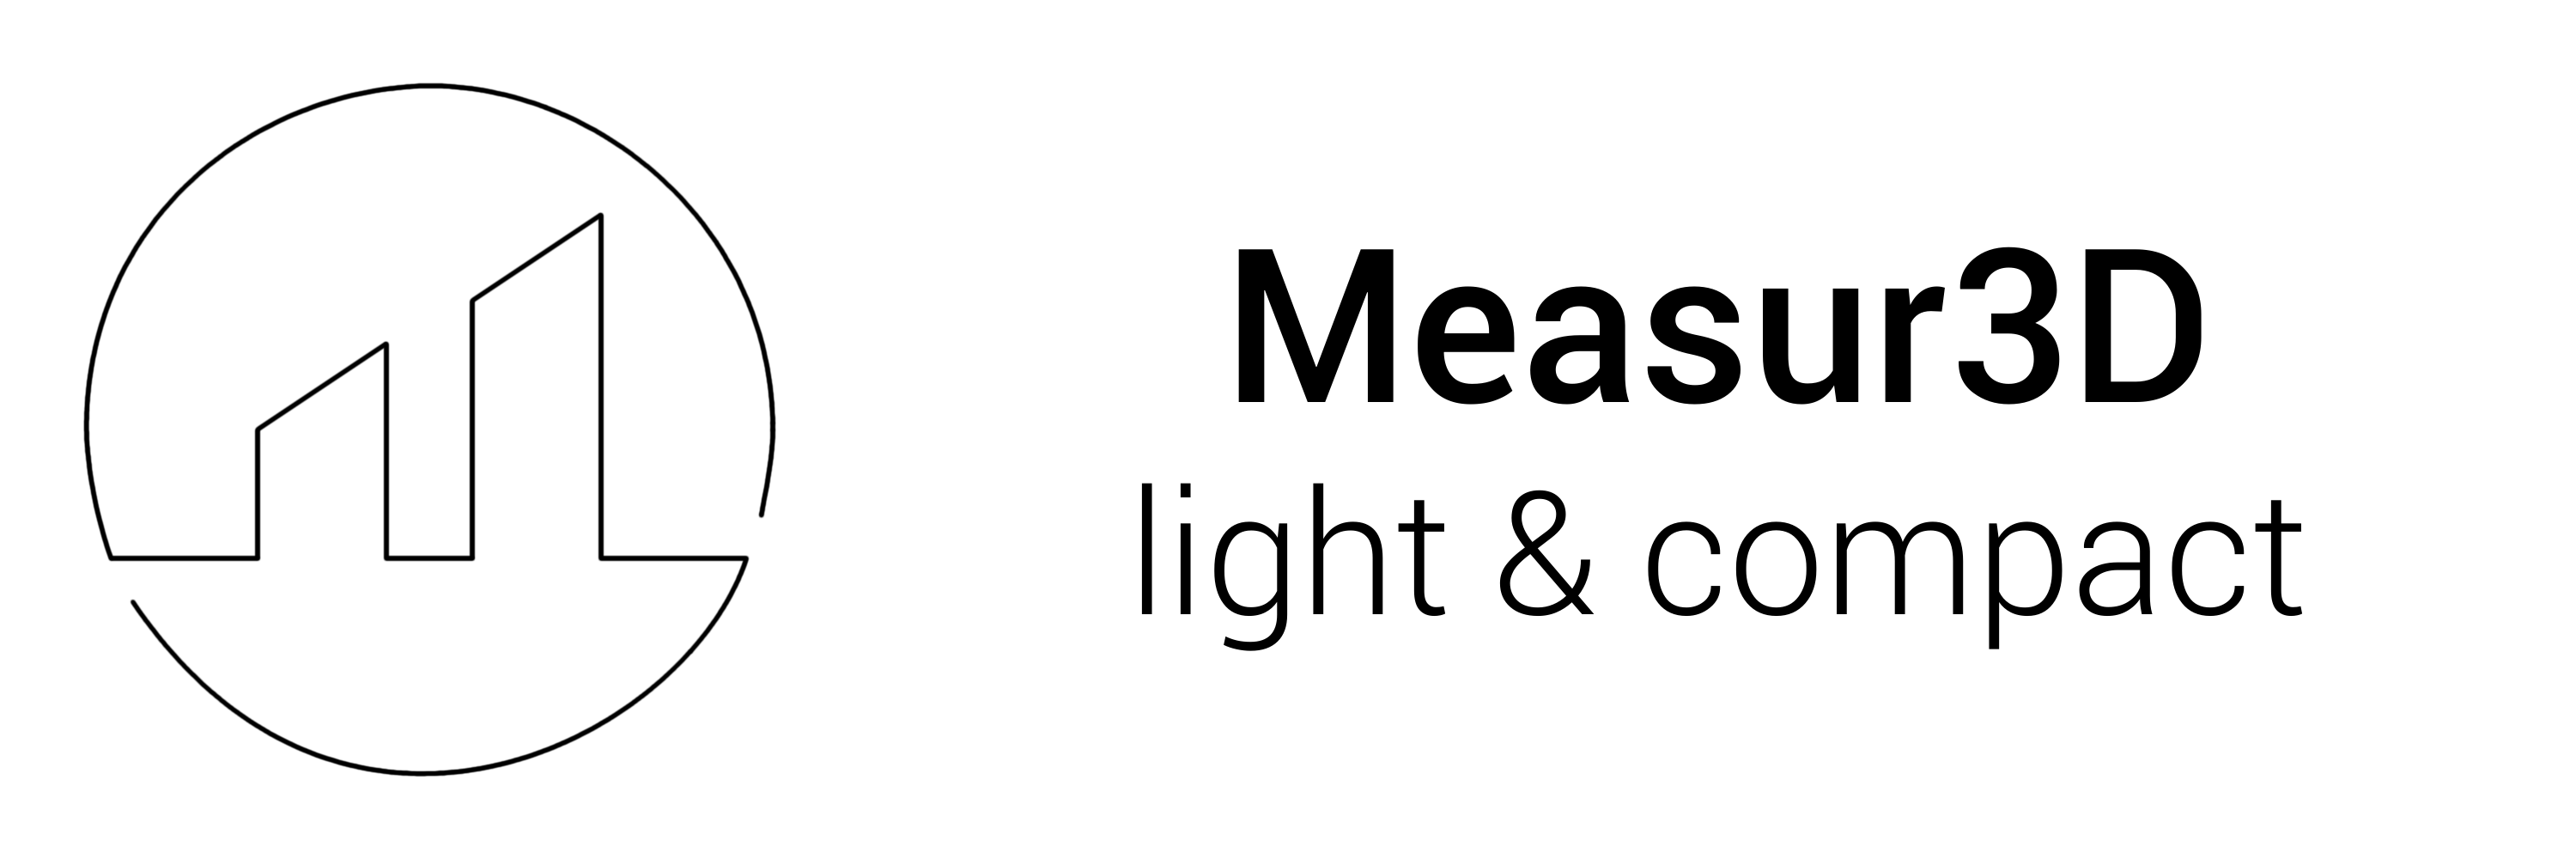 Measur3D logo